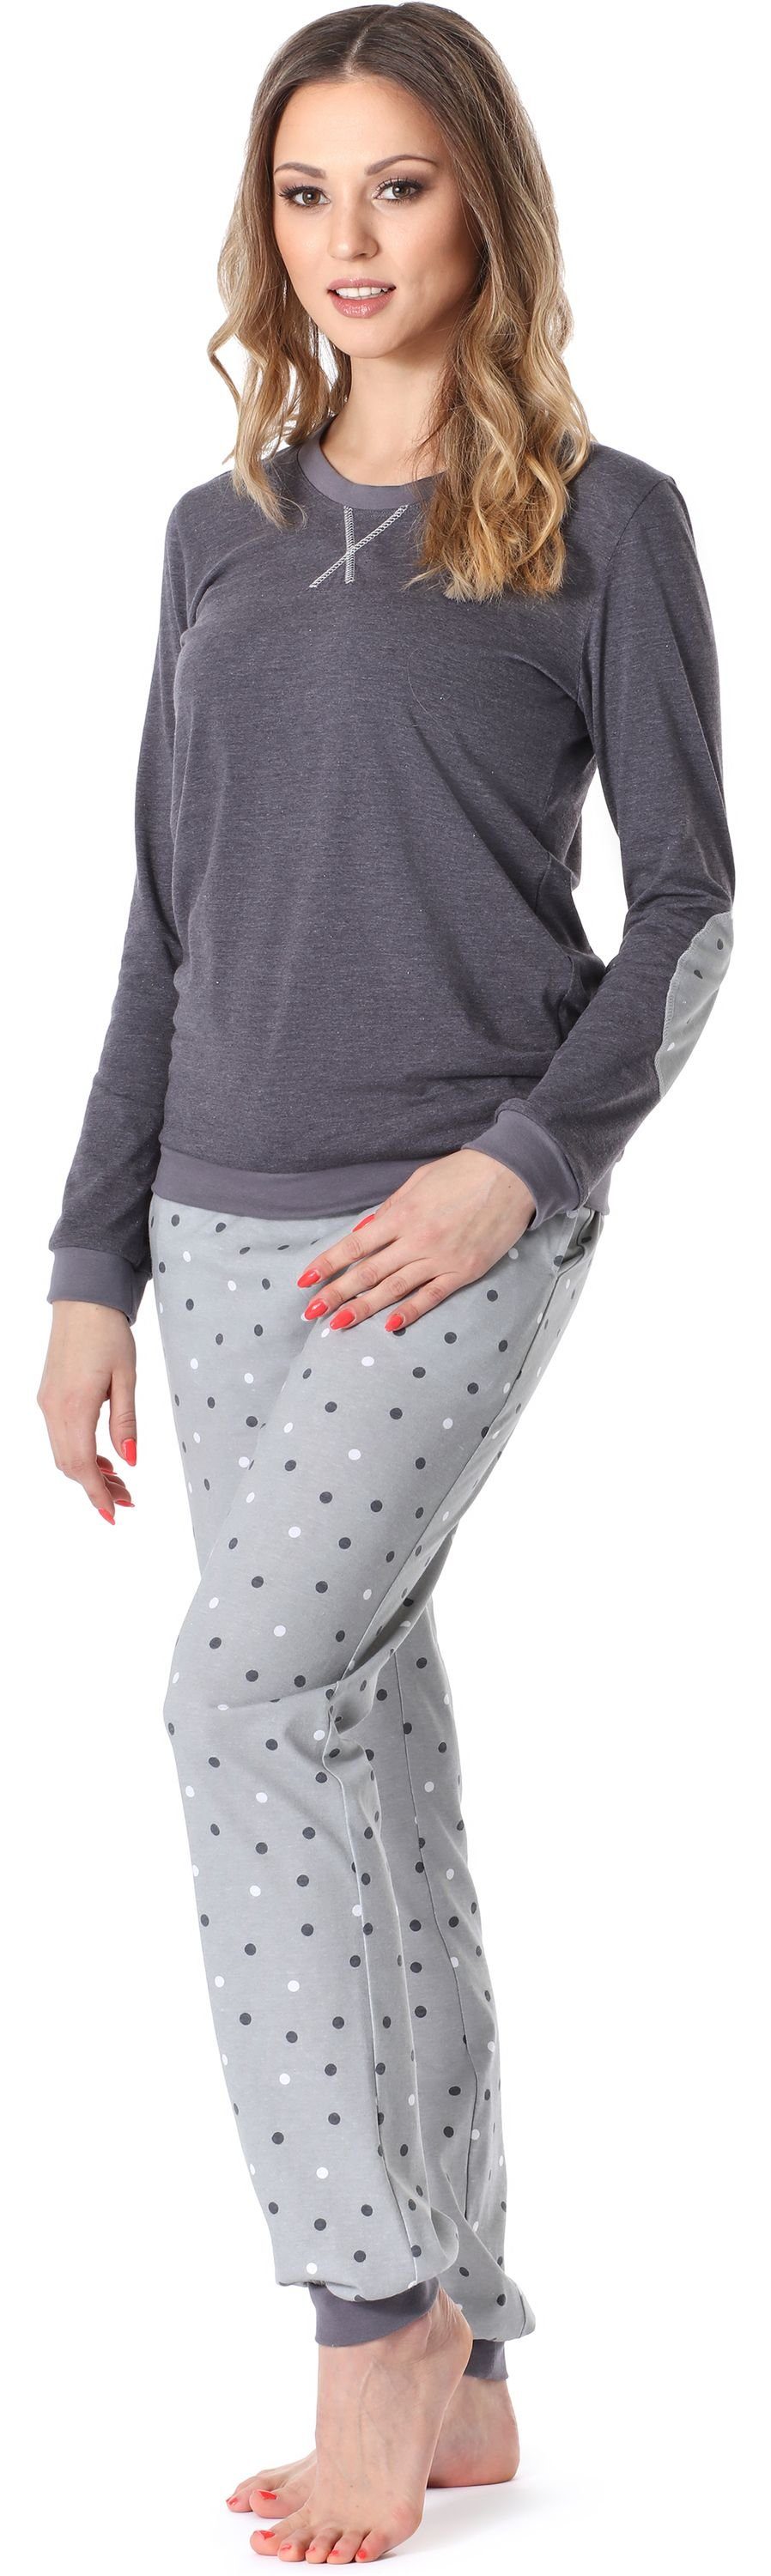 Merry Style Schlafanzug Damen MS10-168 Grau Dunkelmelange Schlafanzug